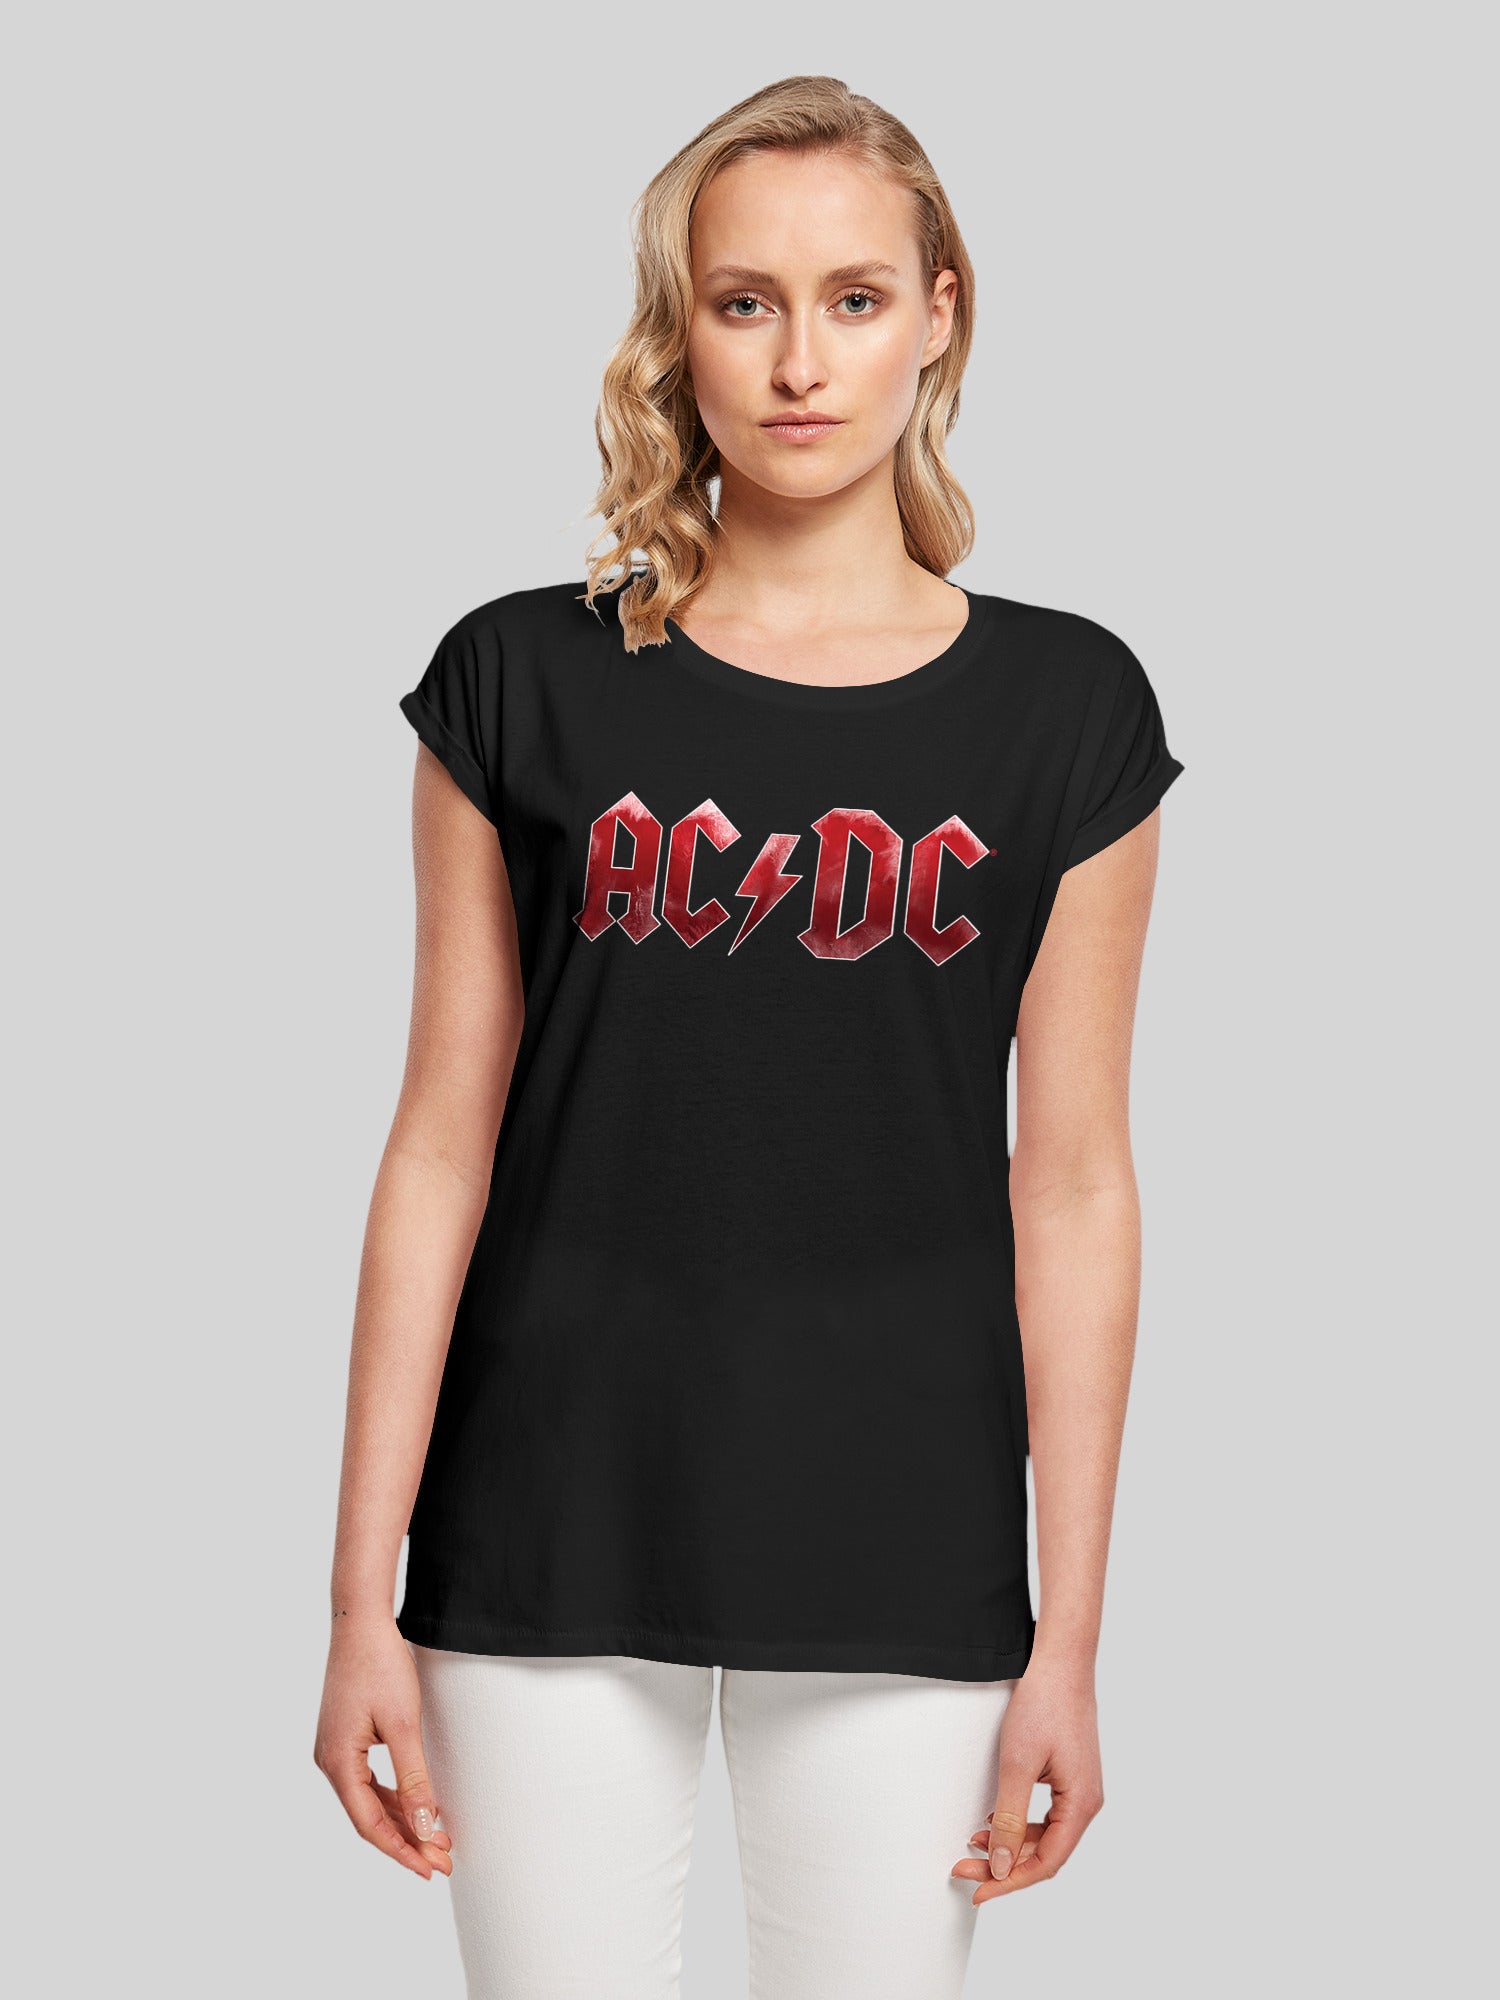 AC/DC – F4NT4STIC